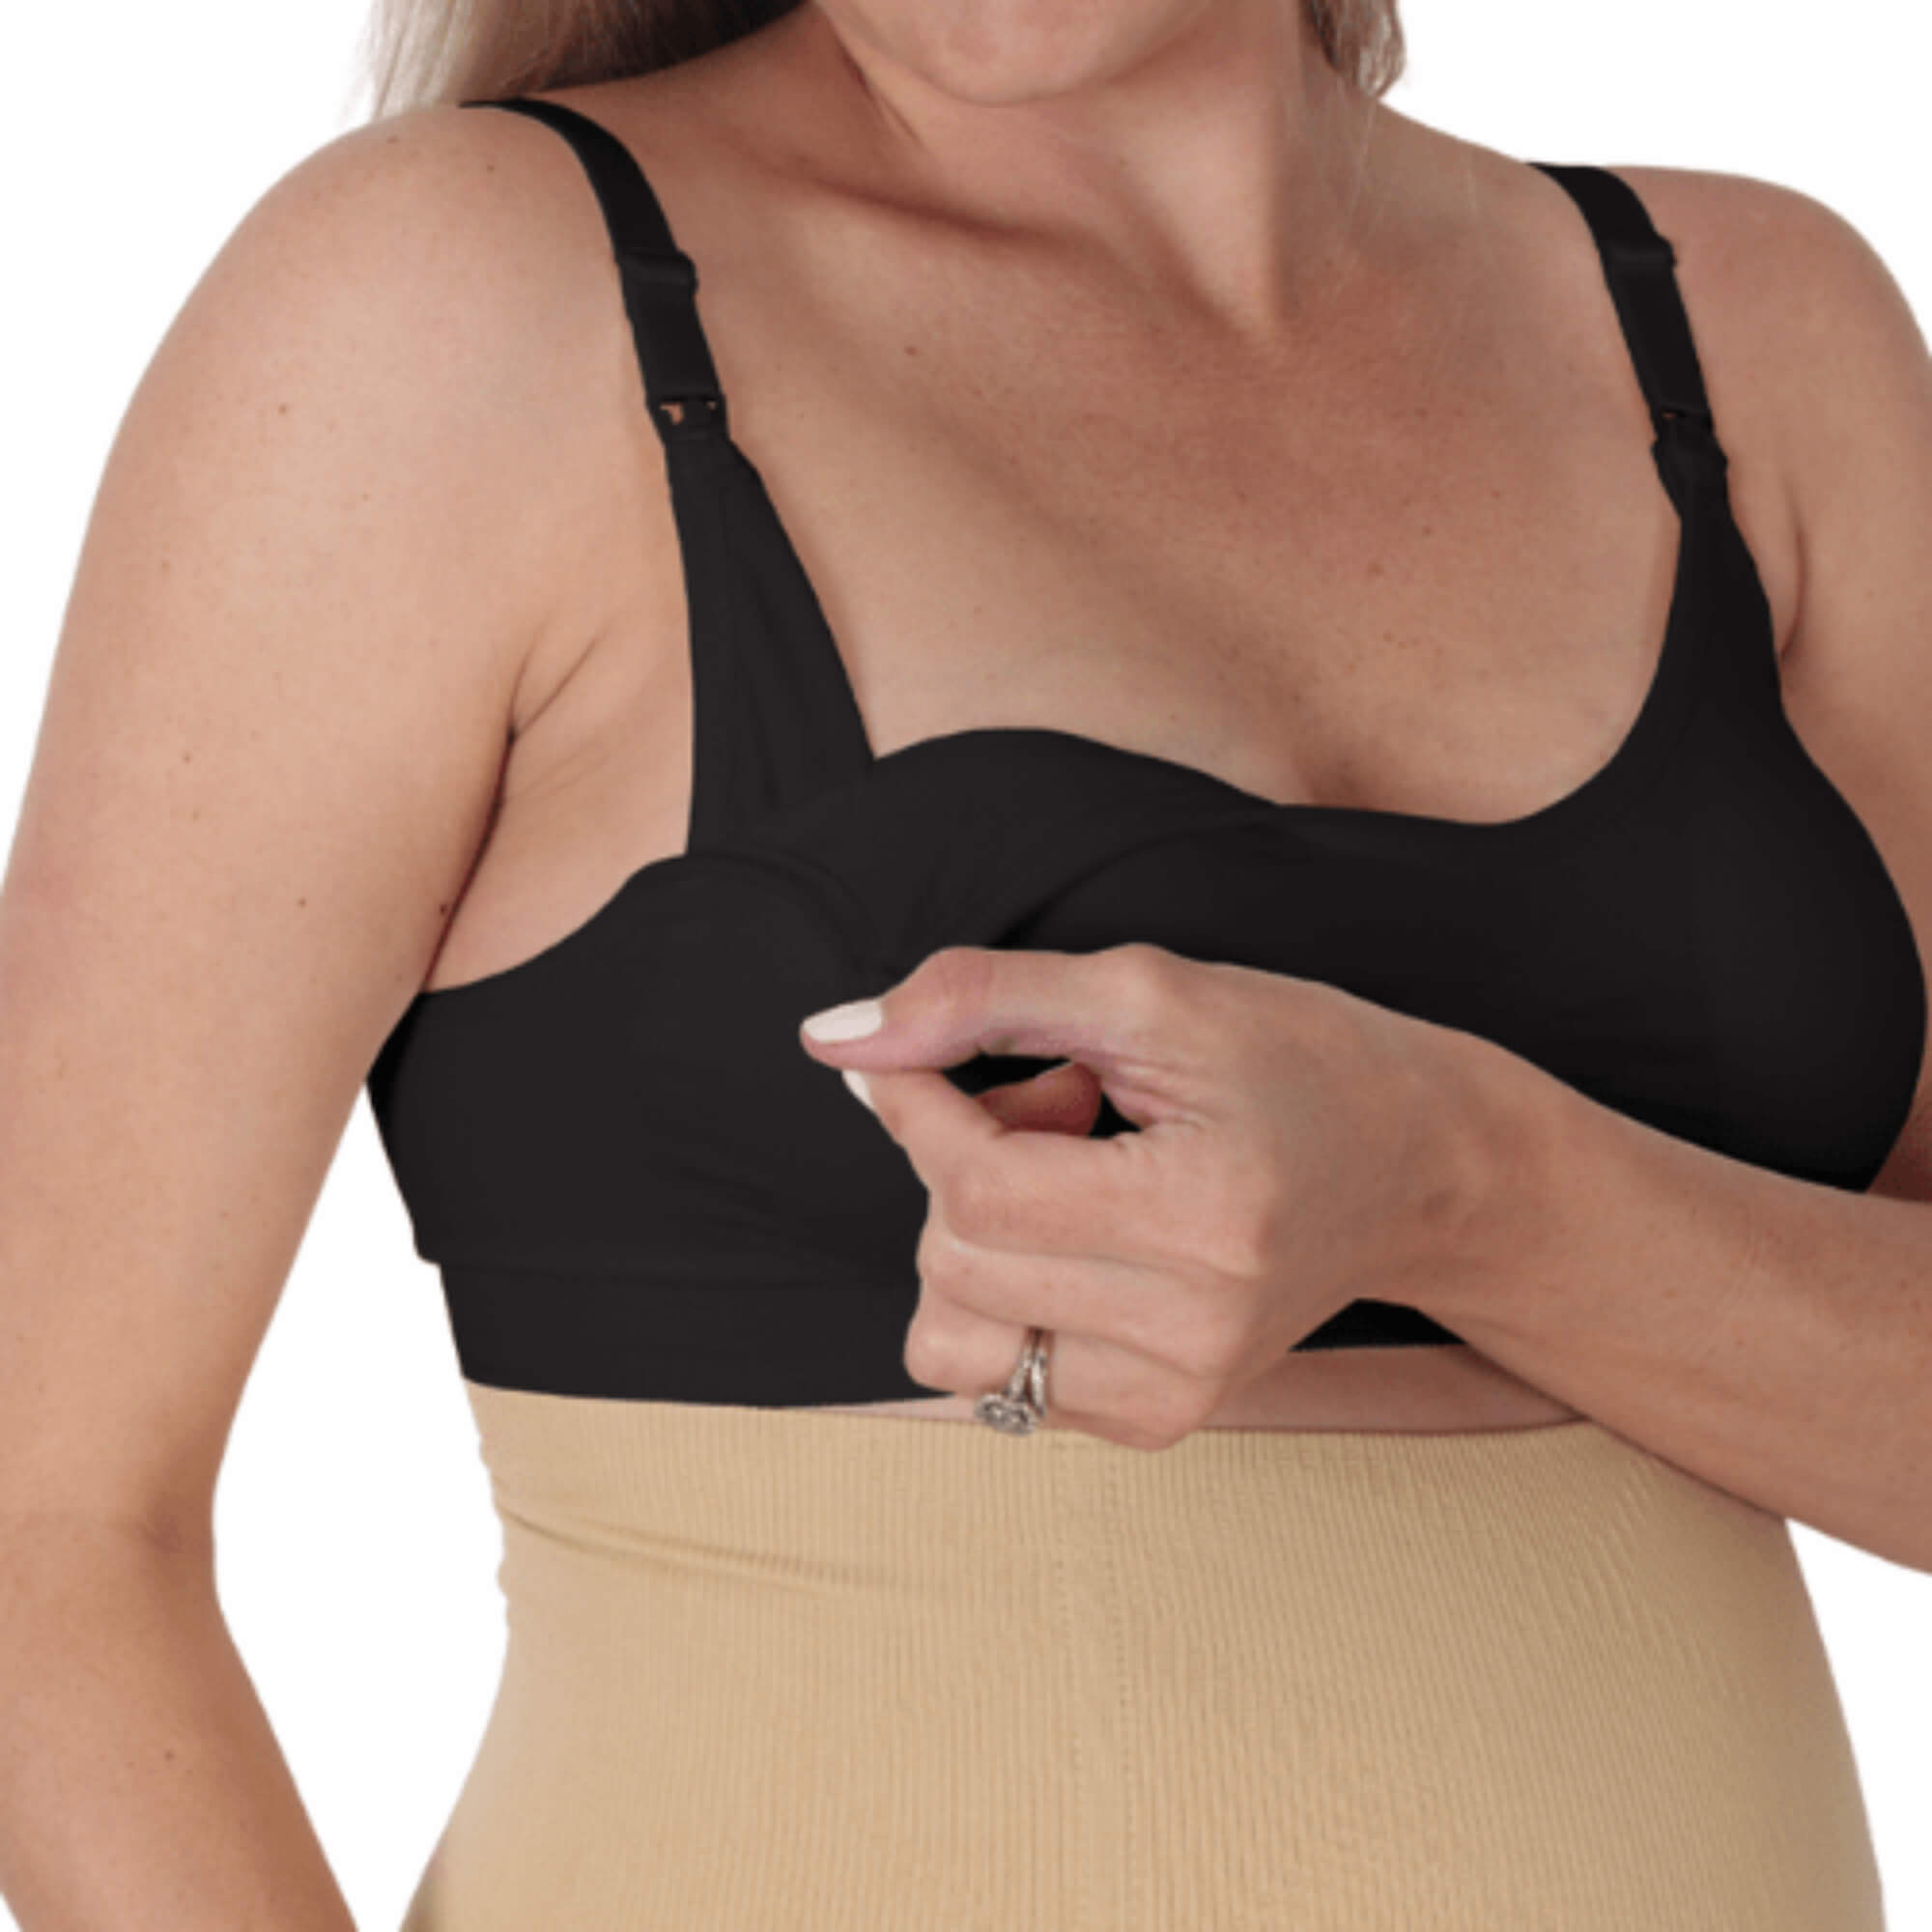 noola seamless super stretch nursing bra black maternity belts support bands